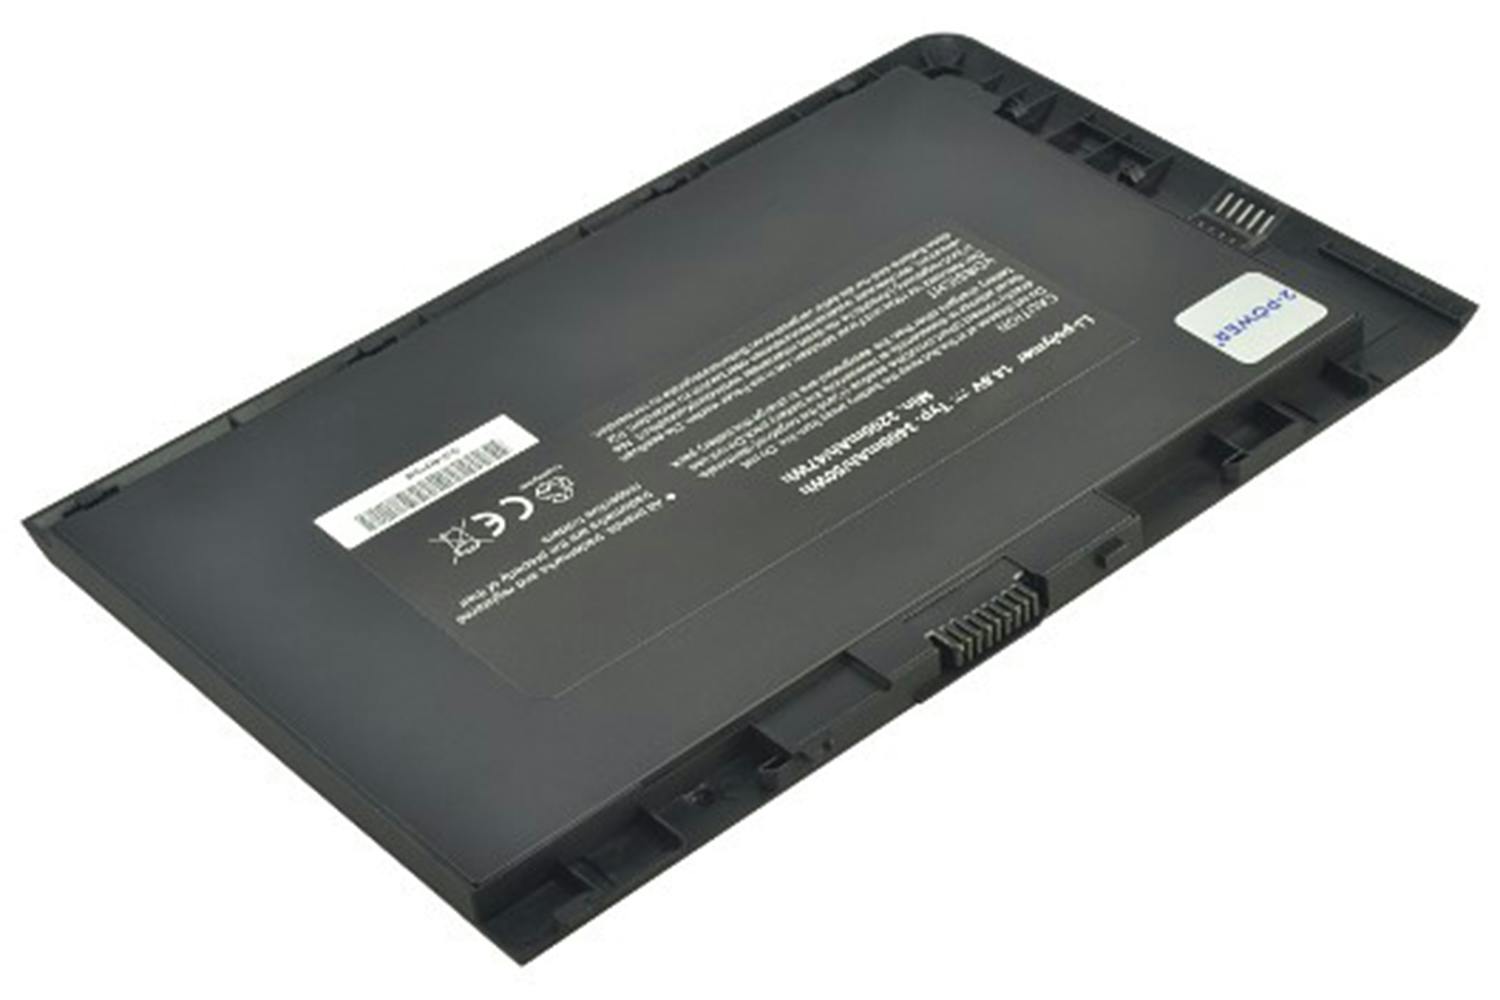 2-Power Main Battery Pack 14.8V 3400mAh